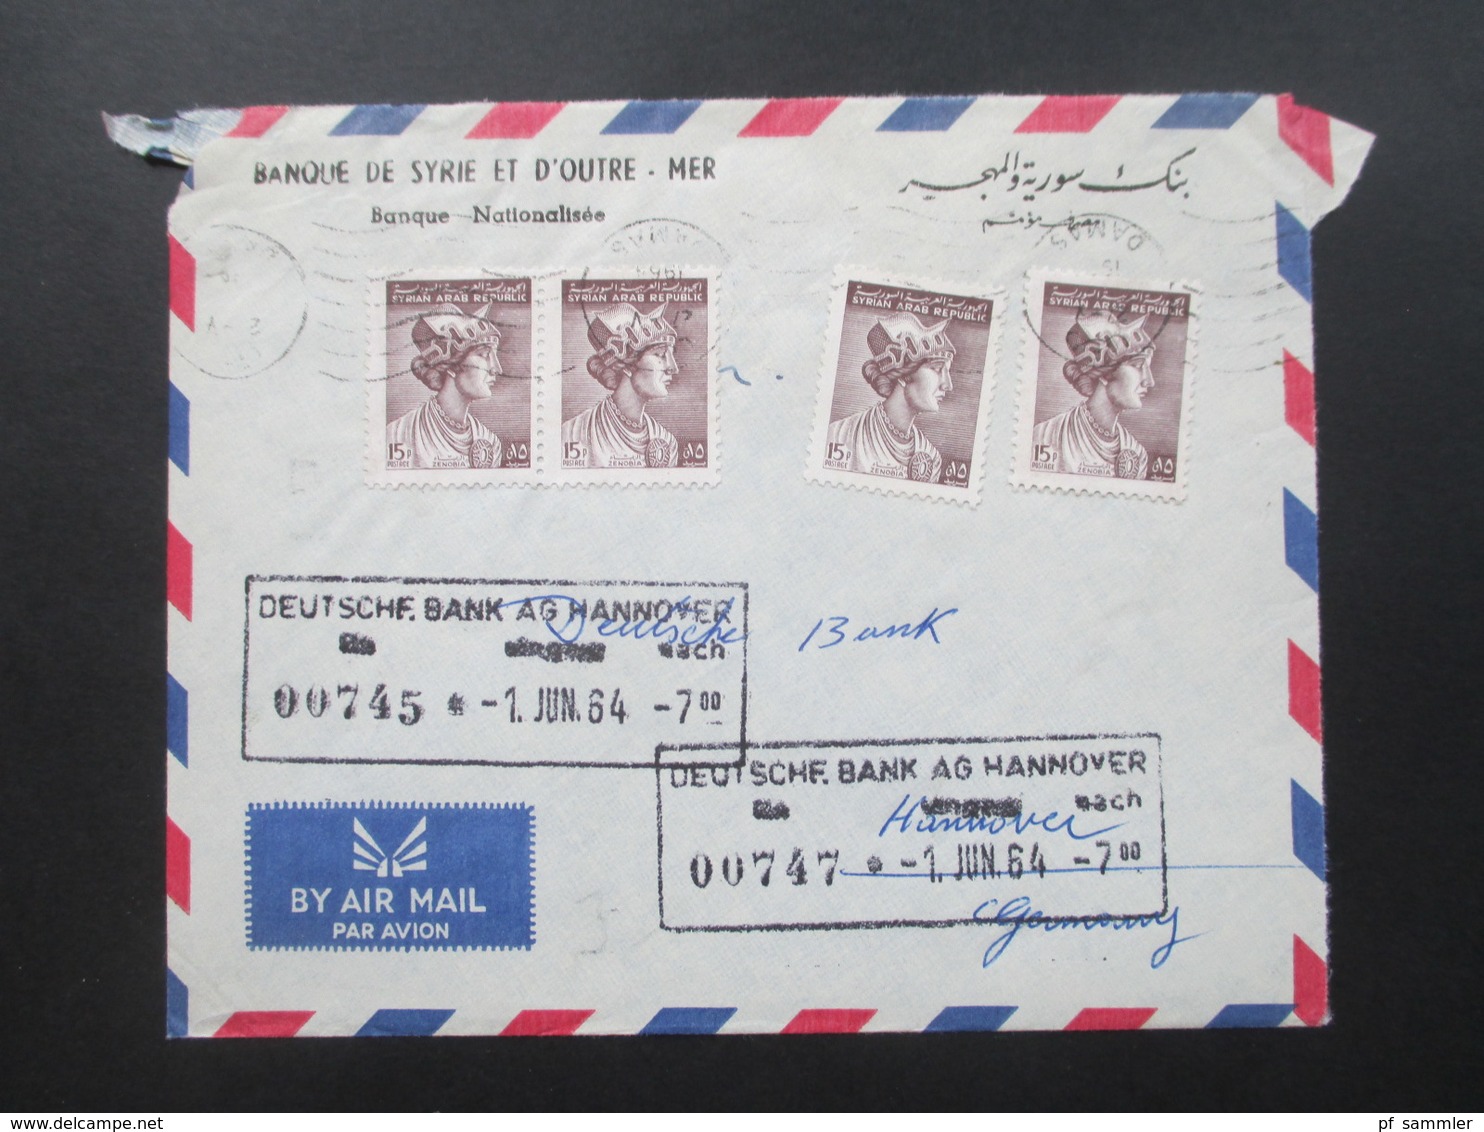 Syrien 1964 Air Mail / Luftpost Banque De Syrie Et D'Outre - Mer. Damas - Hannover Deutsche Bank - Syrien